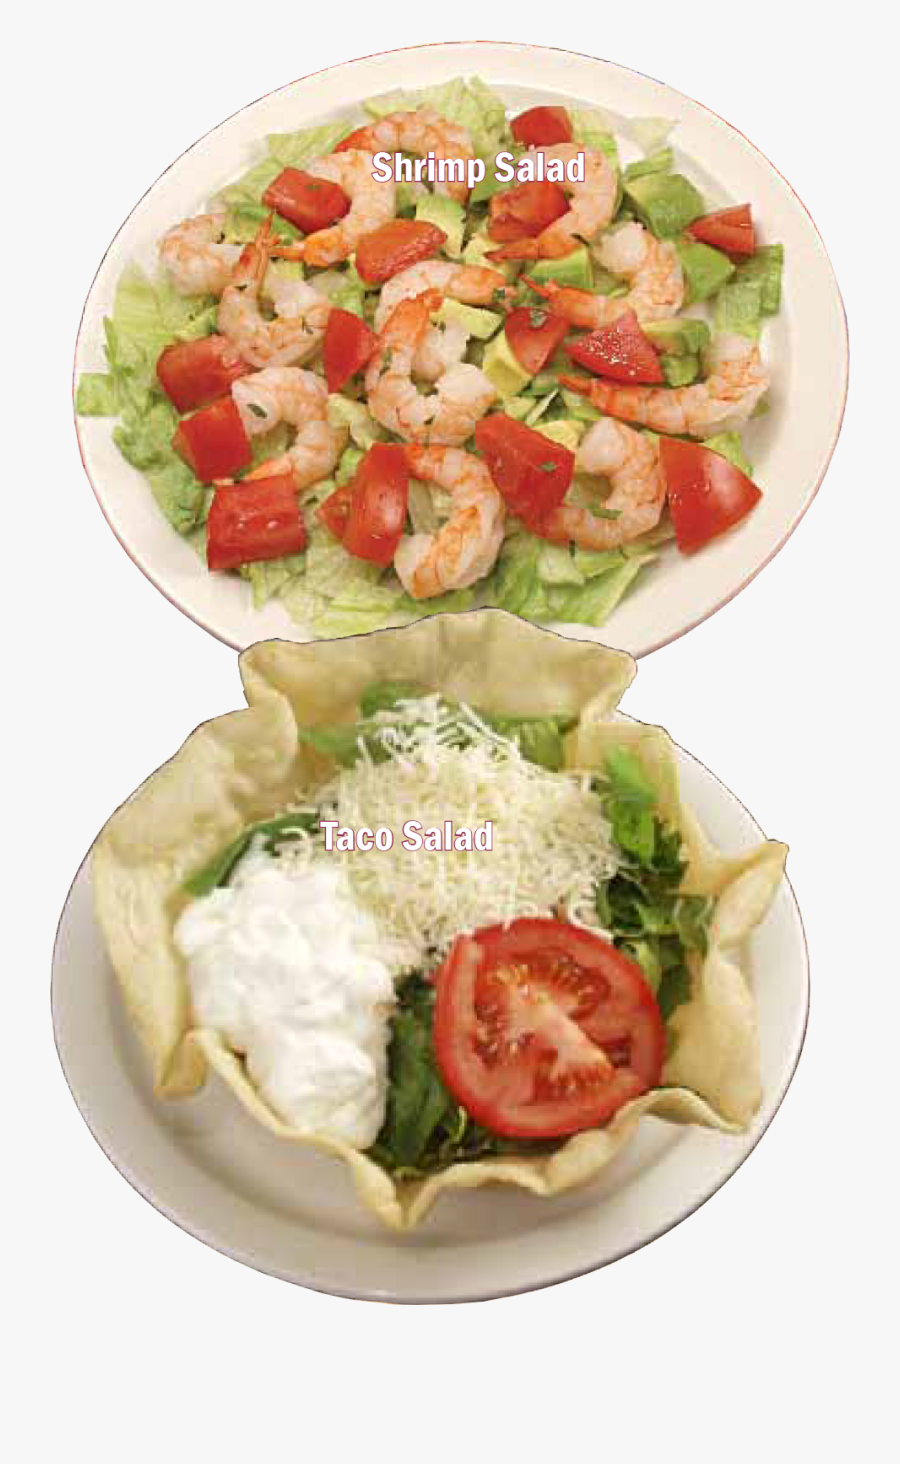 A Shrimp Salad And Taco Salad - Caesar Salad, Transparent Clipart